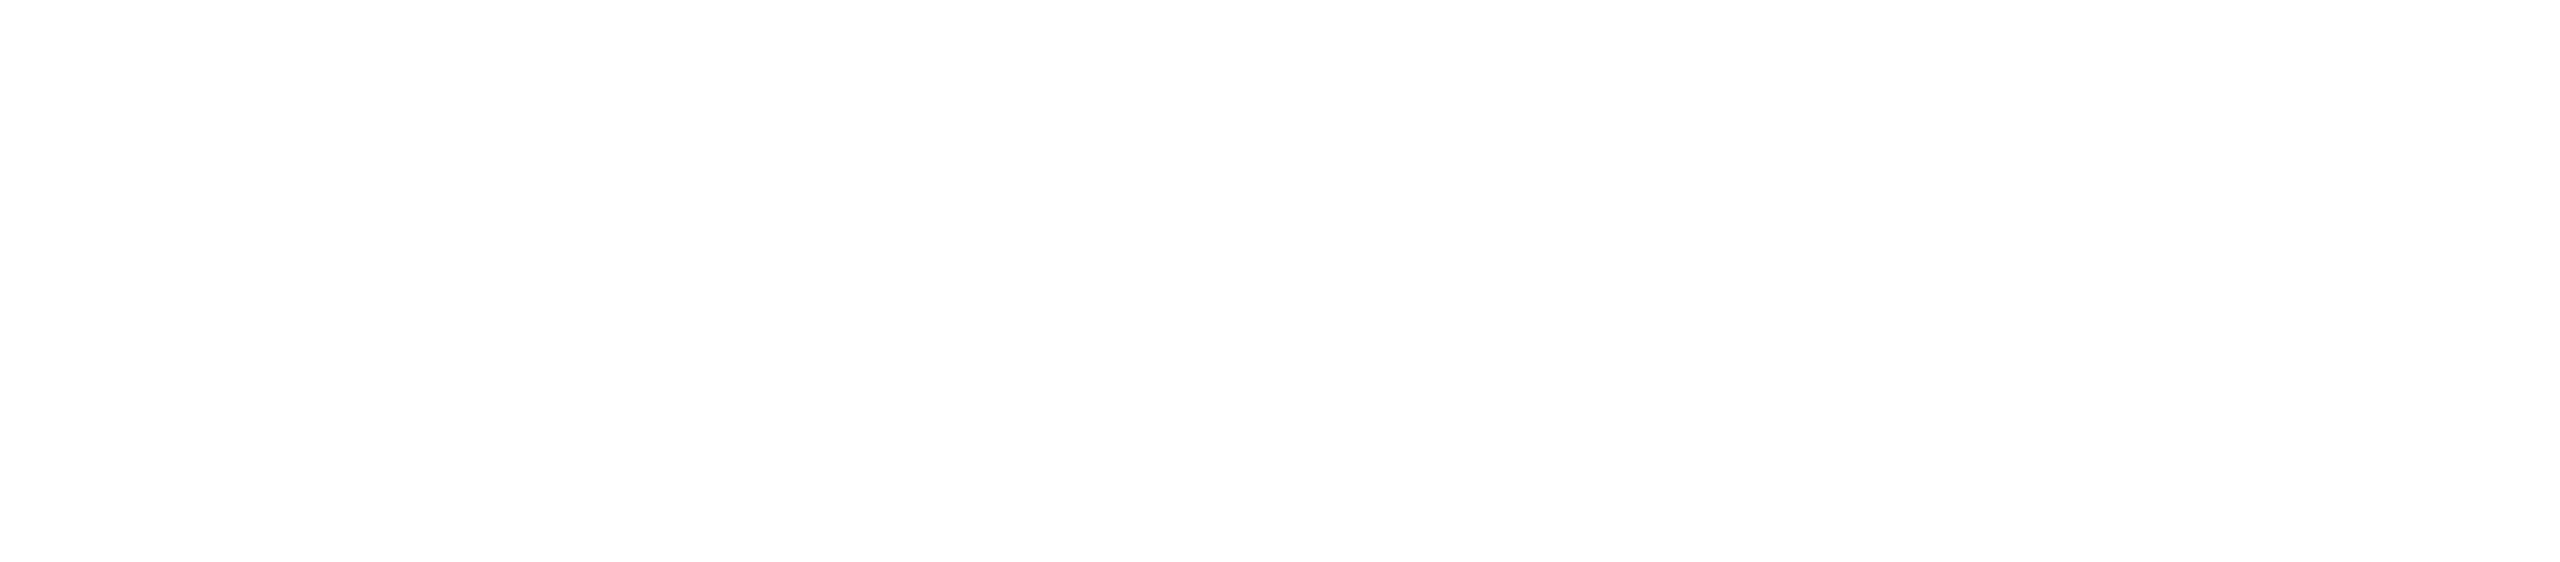 Kofinanziert von der Europäischen Union